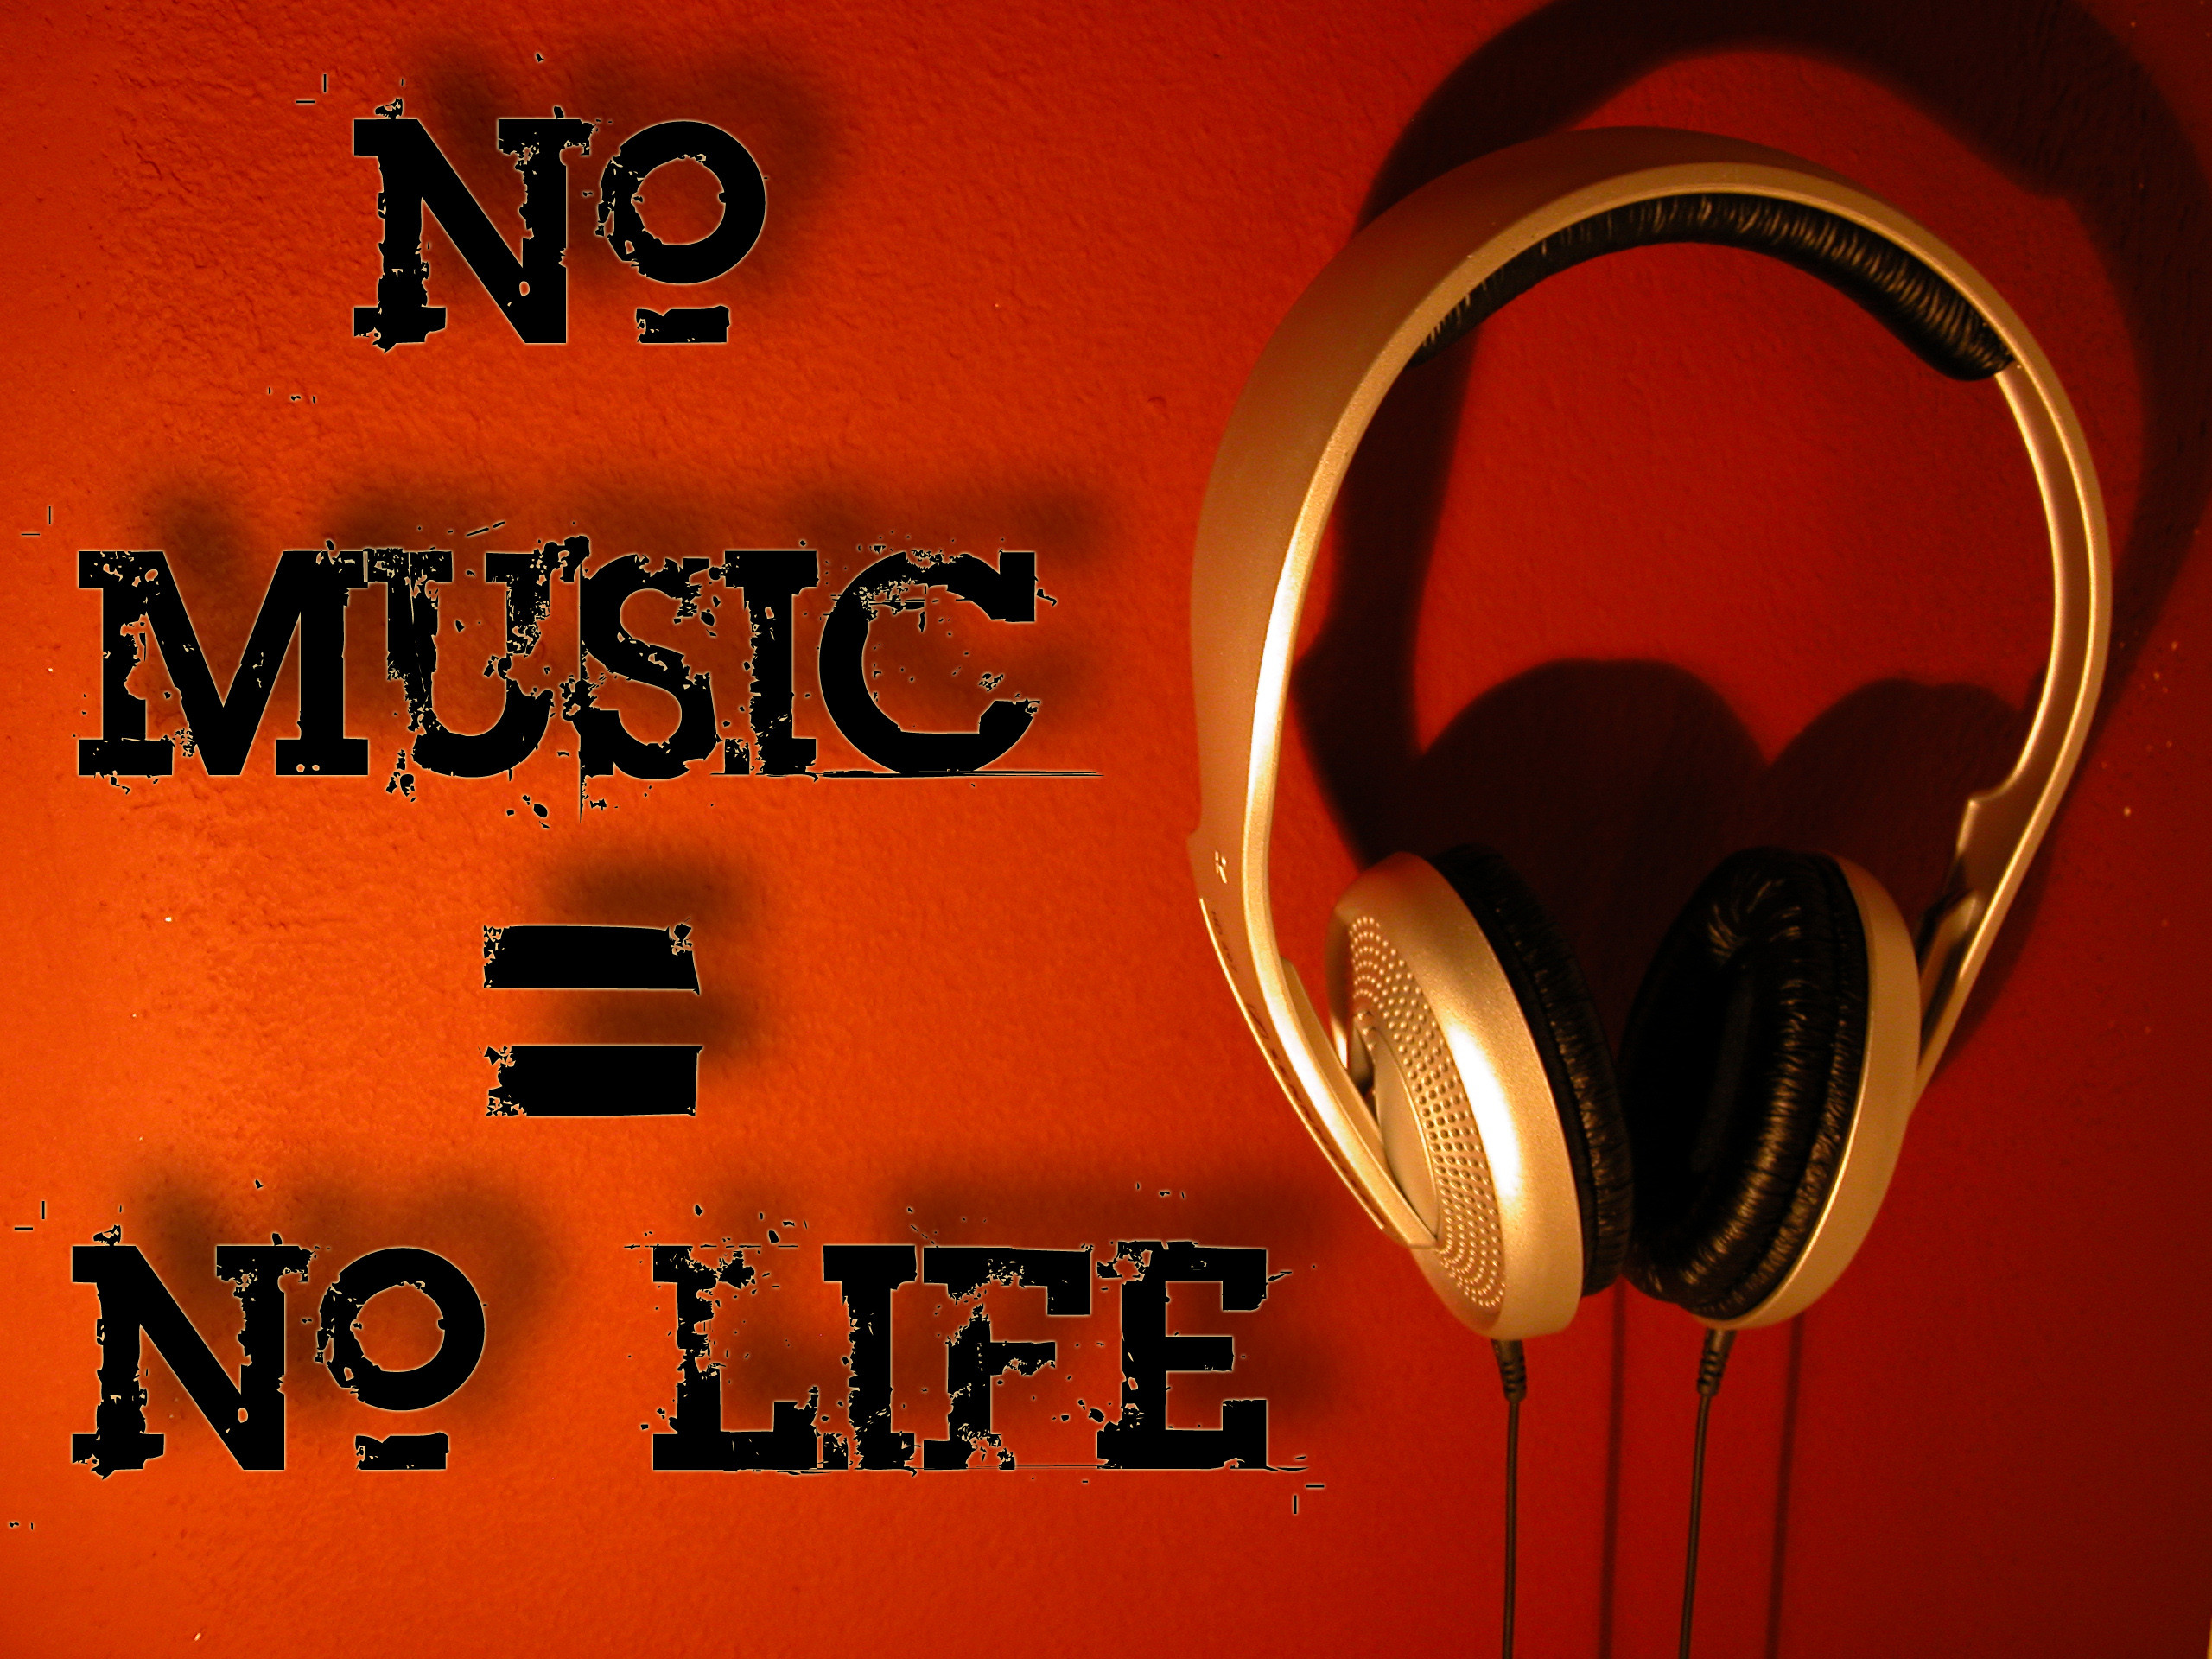 2560x1920 No Music = No life. “